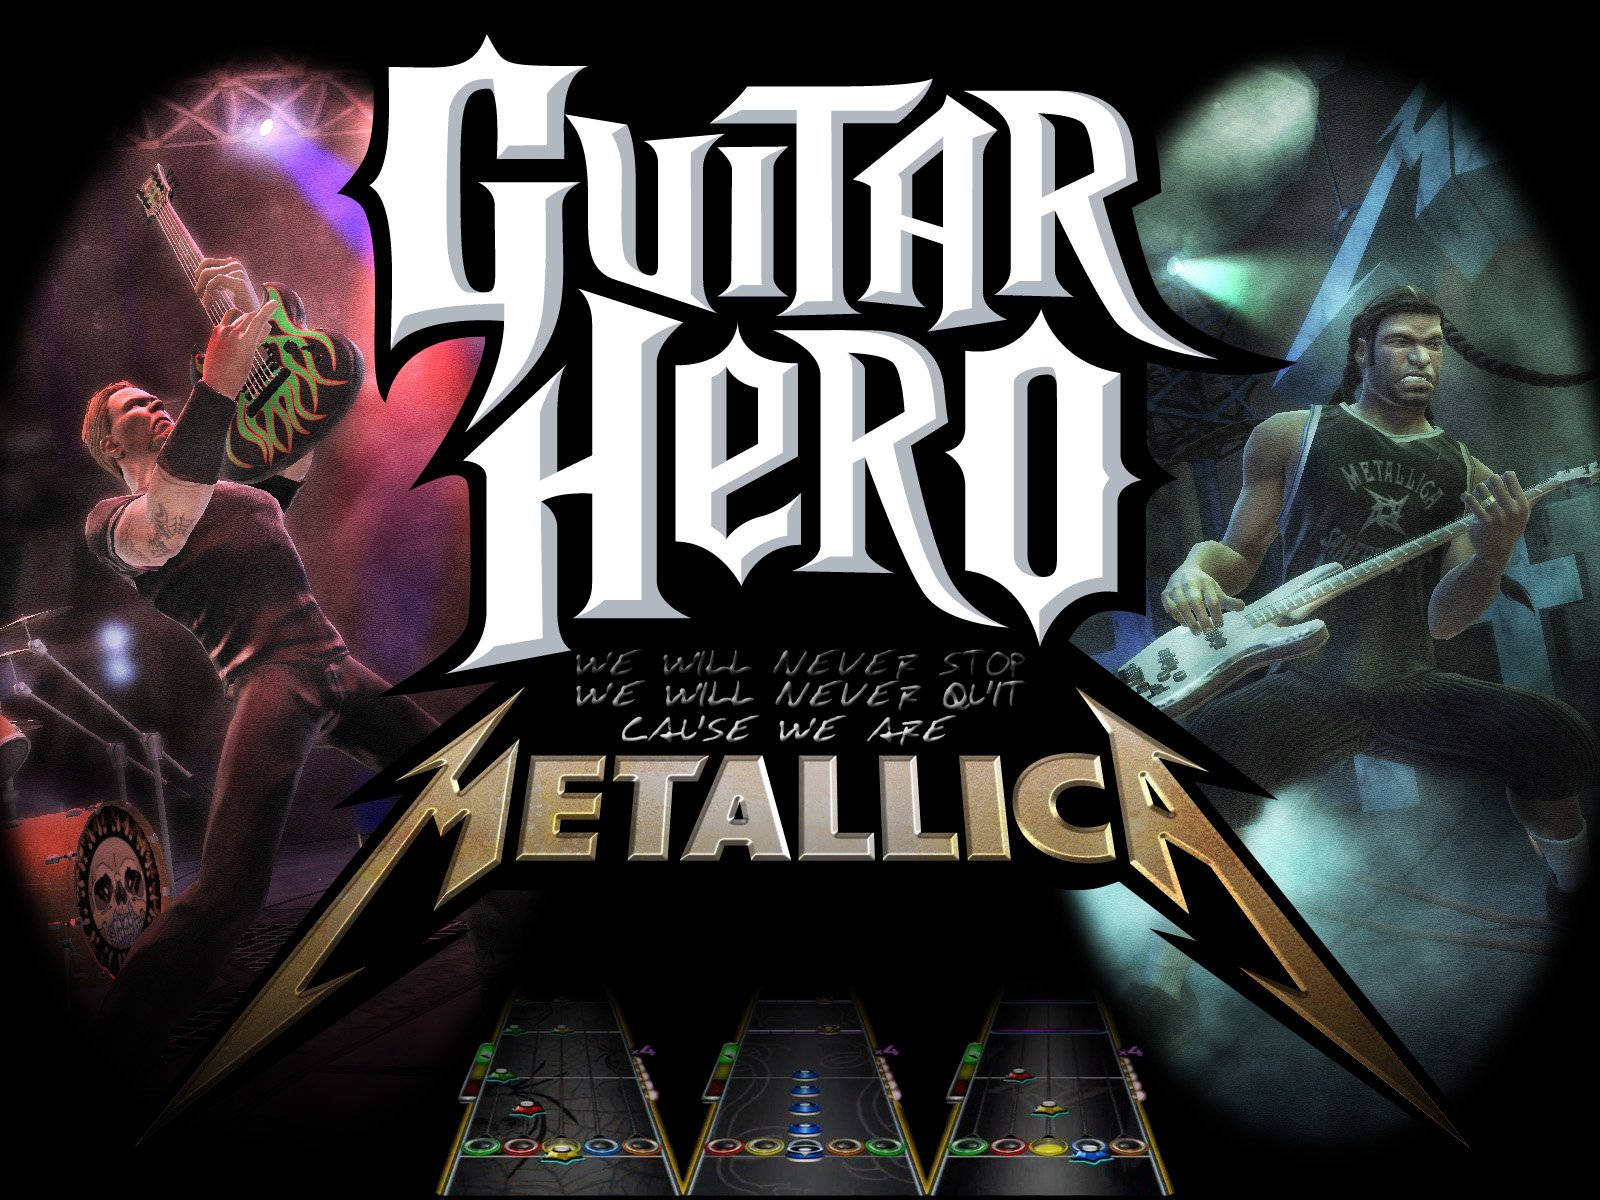 Guitar Hero Metallica Digital Poster